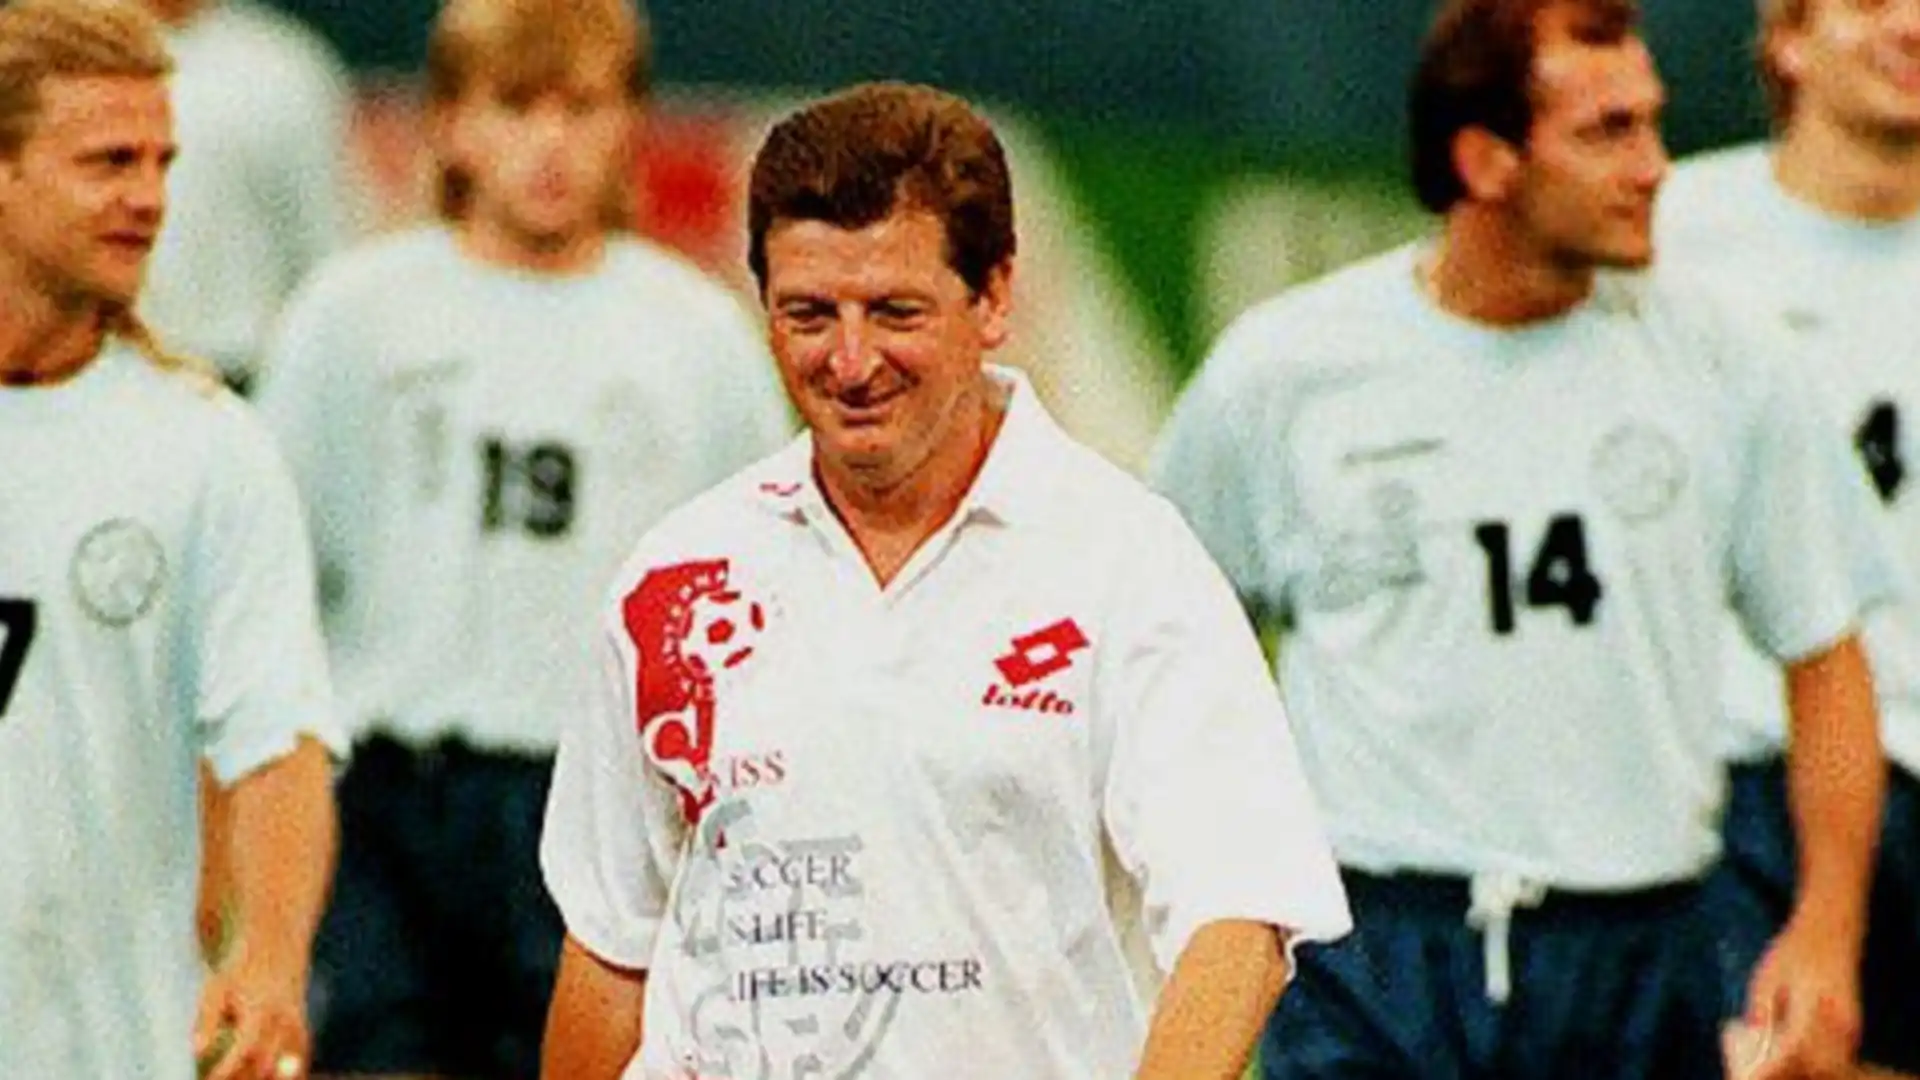 Nel campionato svedese si è affermato con il Malmoe, poi è stato ct della Svizzera nei primi anni '90.